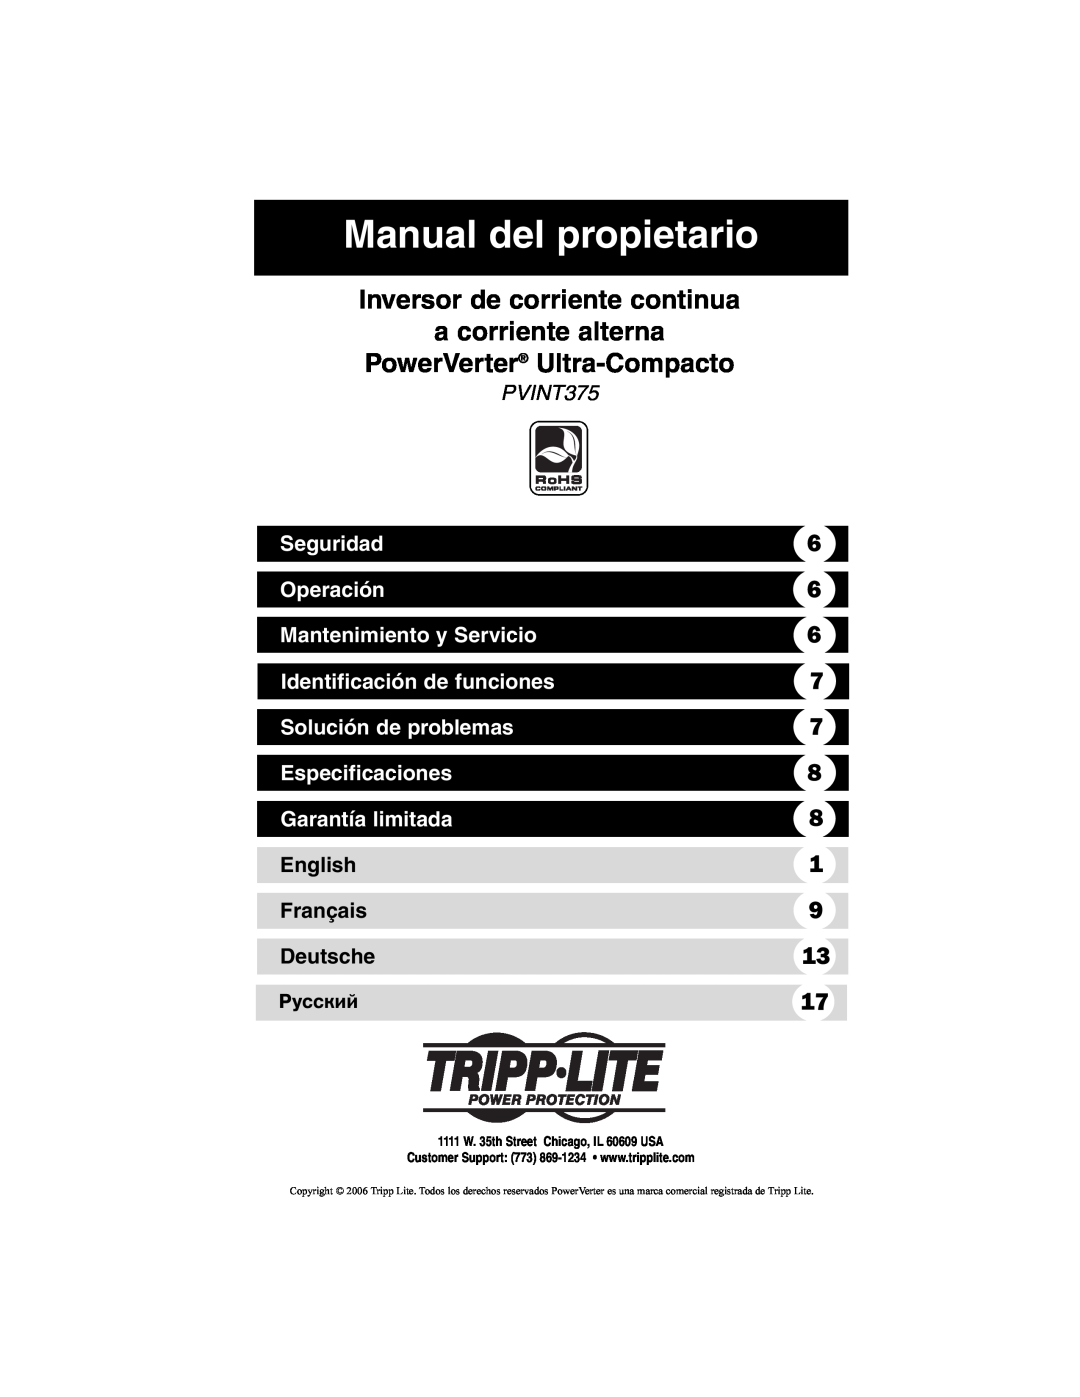 Tripp Lite PVINT375 Manual del propietario, Seguridad, Operación, Mantenimiento y Servicio, Identificación de funciones 